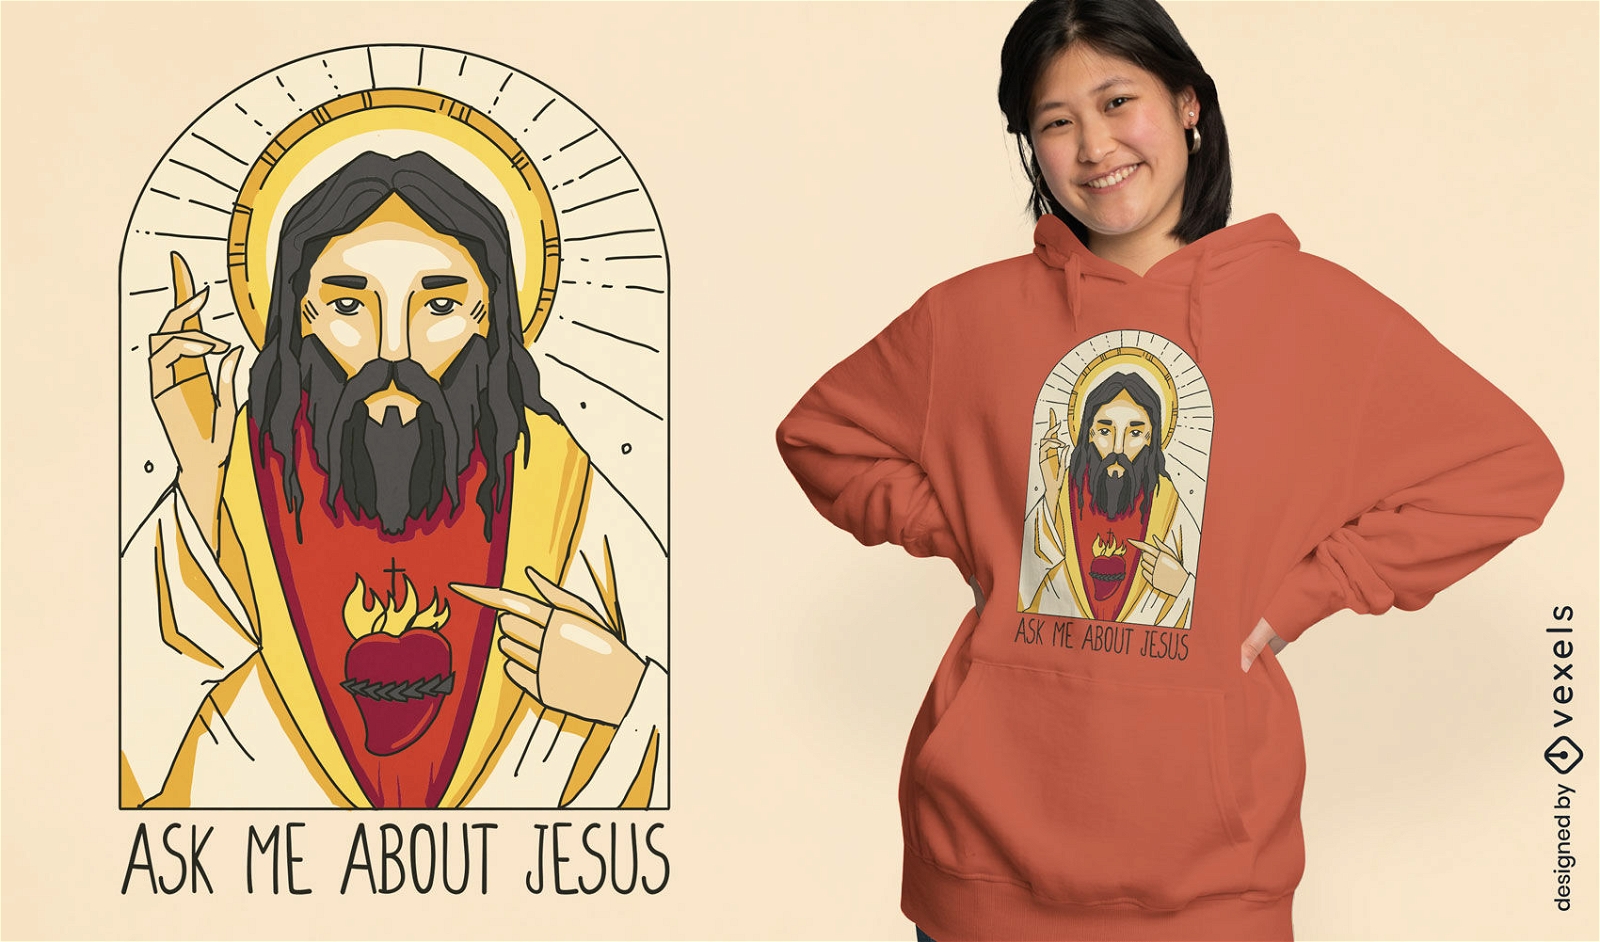 Dise?o de camiseta de imagen religiosa de Jes?s.